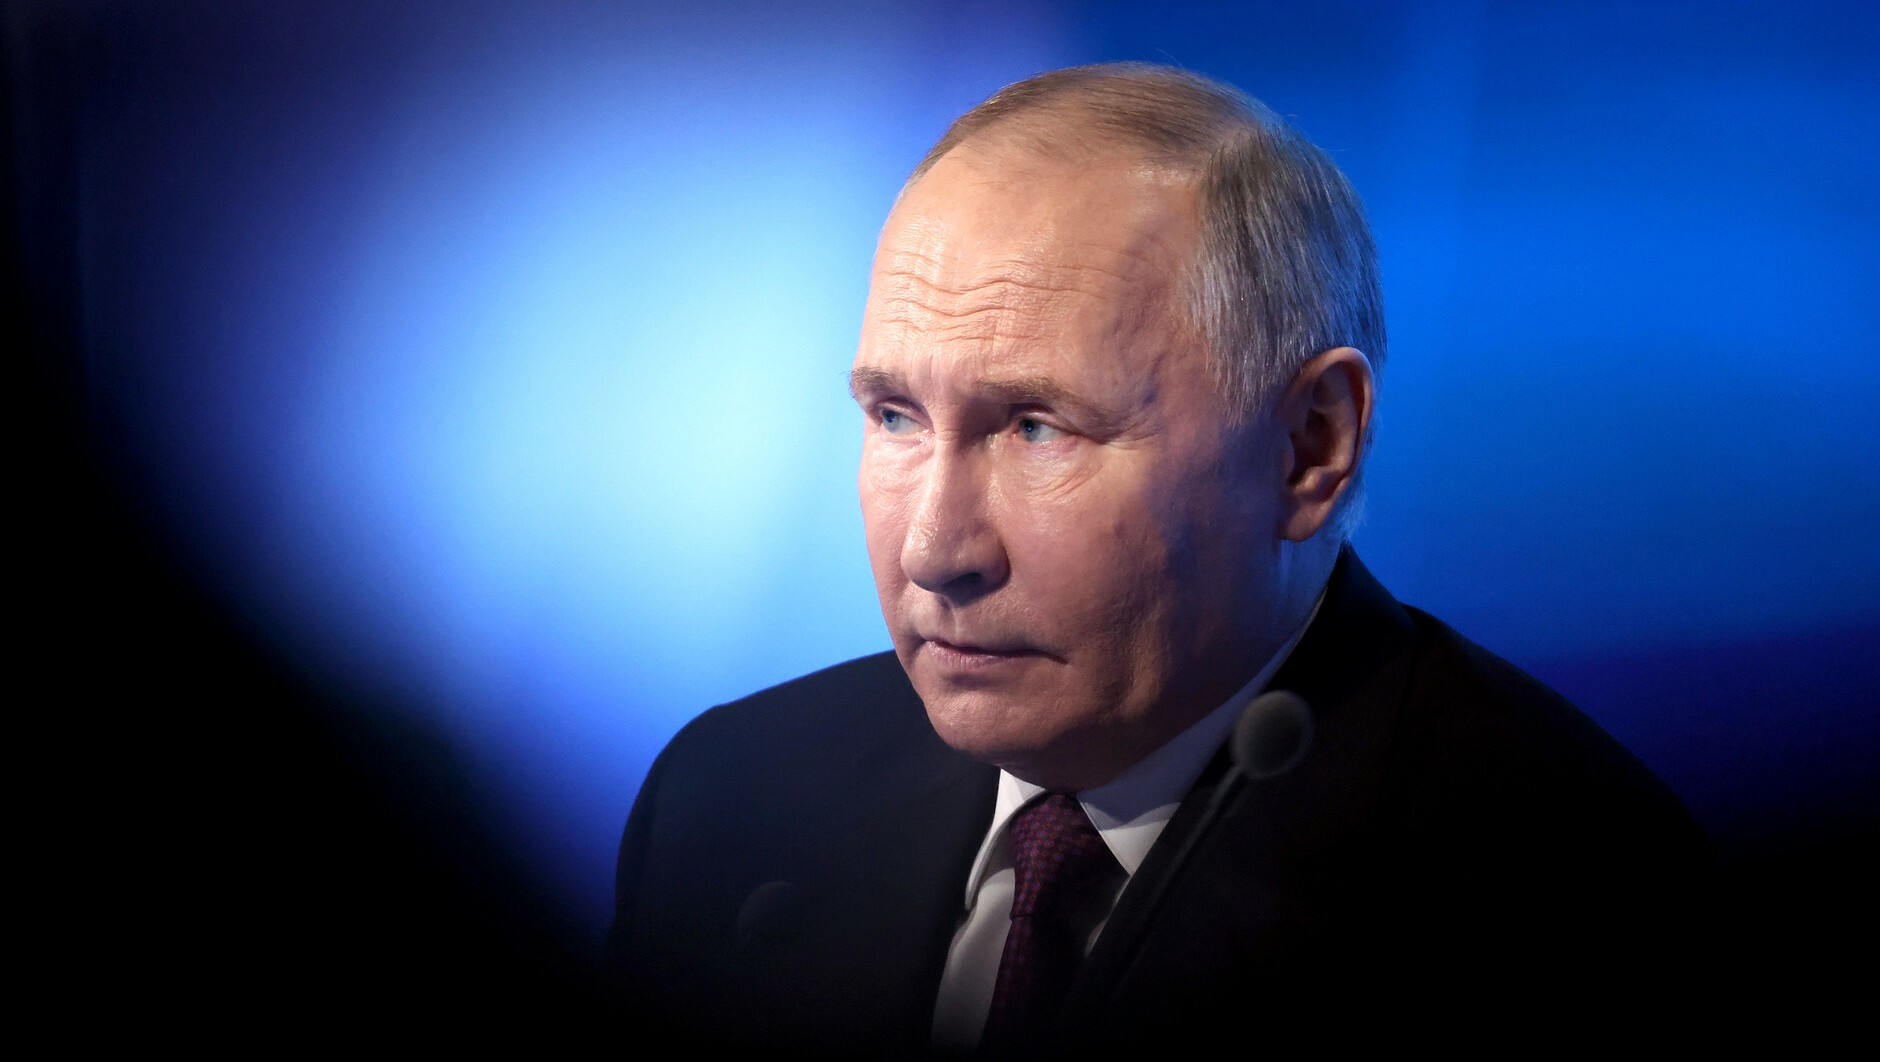 ВЦИОМ: Большинство россиян верят в крепкую стабильность при Путине